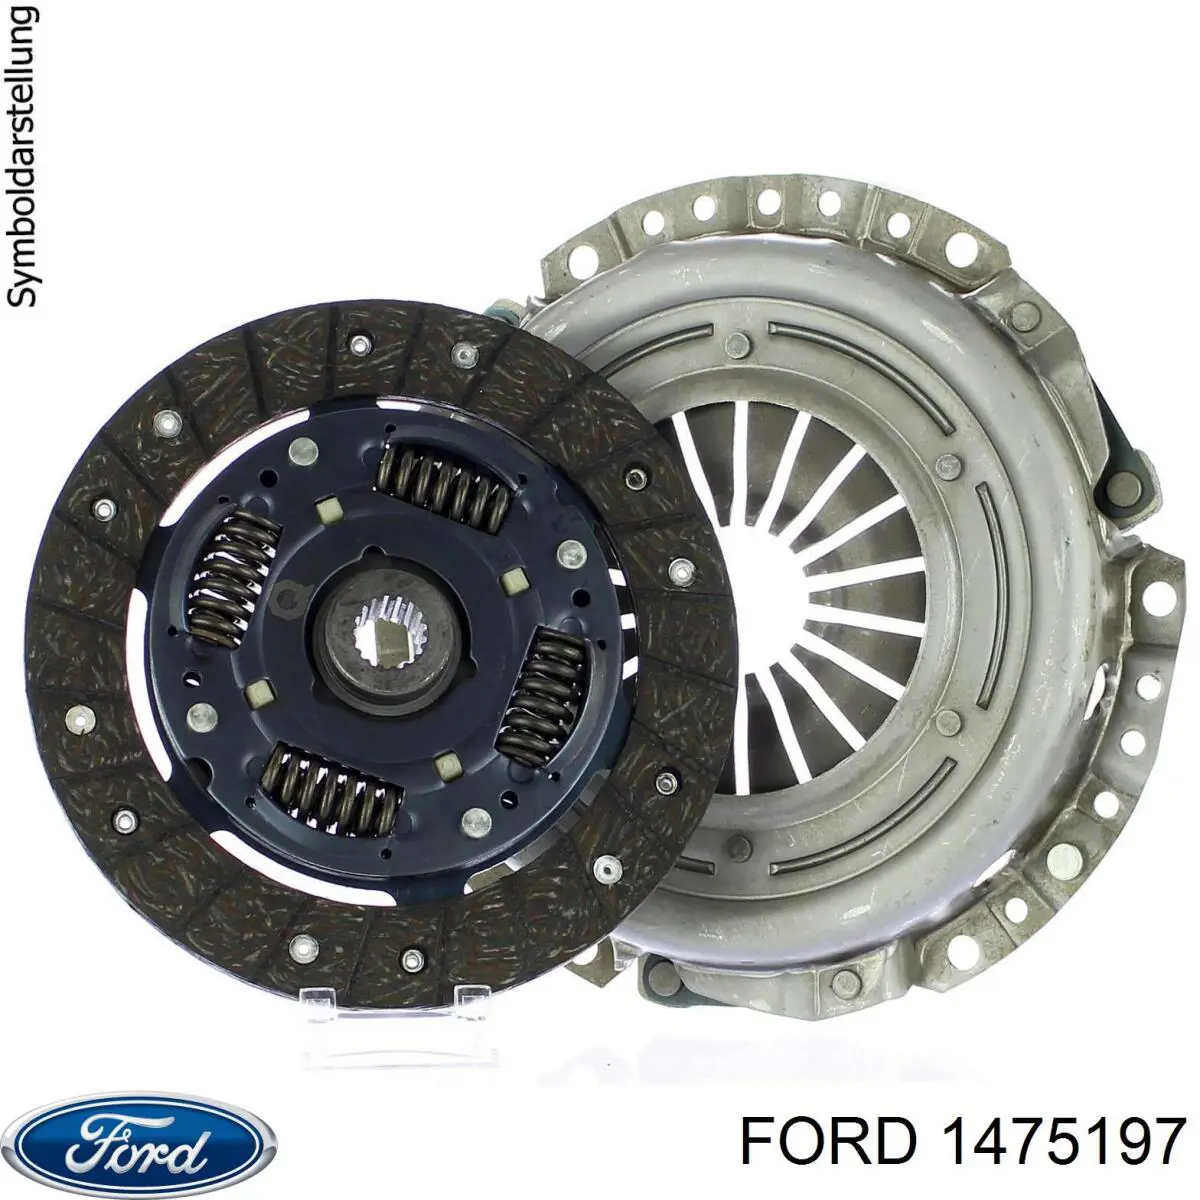 Plato de presión del embrague para Ford Sierra (GBC)